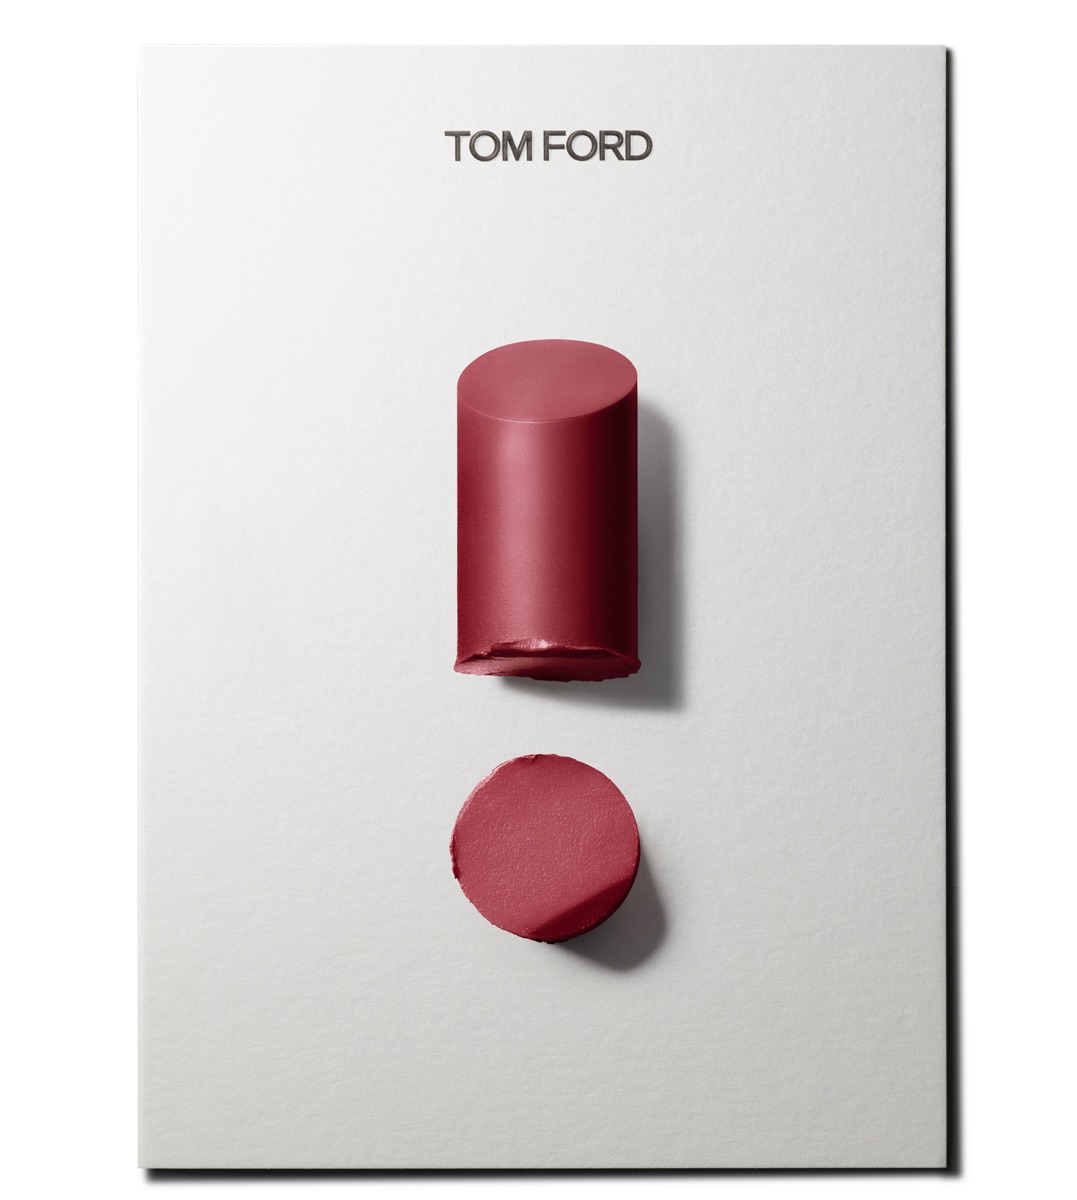 「トム フォード ビューティ」の人気リップに新色追加 濃厚な発色と